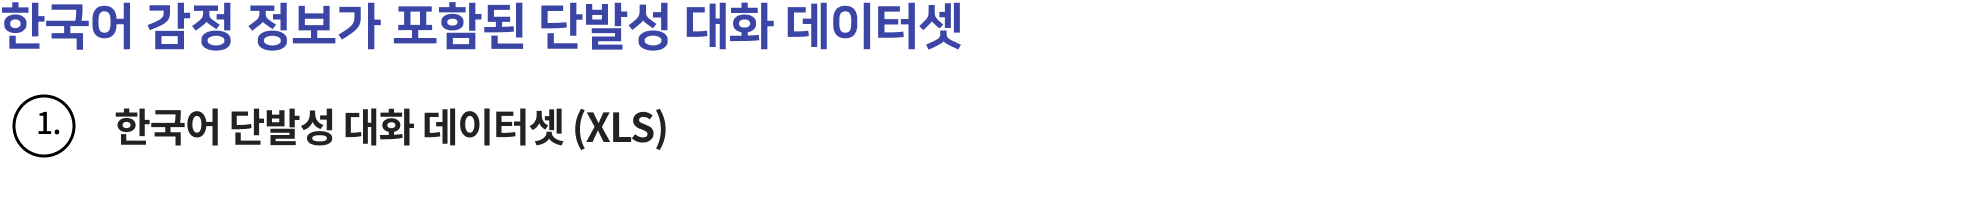 한국어 감정 정보가 포함된 단발성 대화 데이터셋-다운로드 폴더 구성정보 이미지